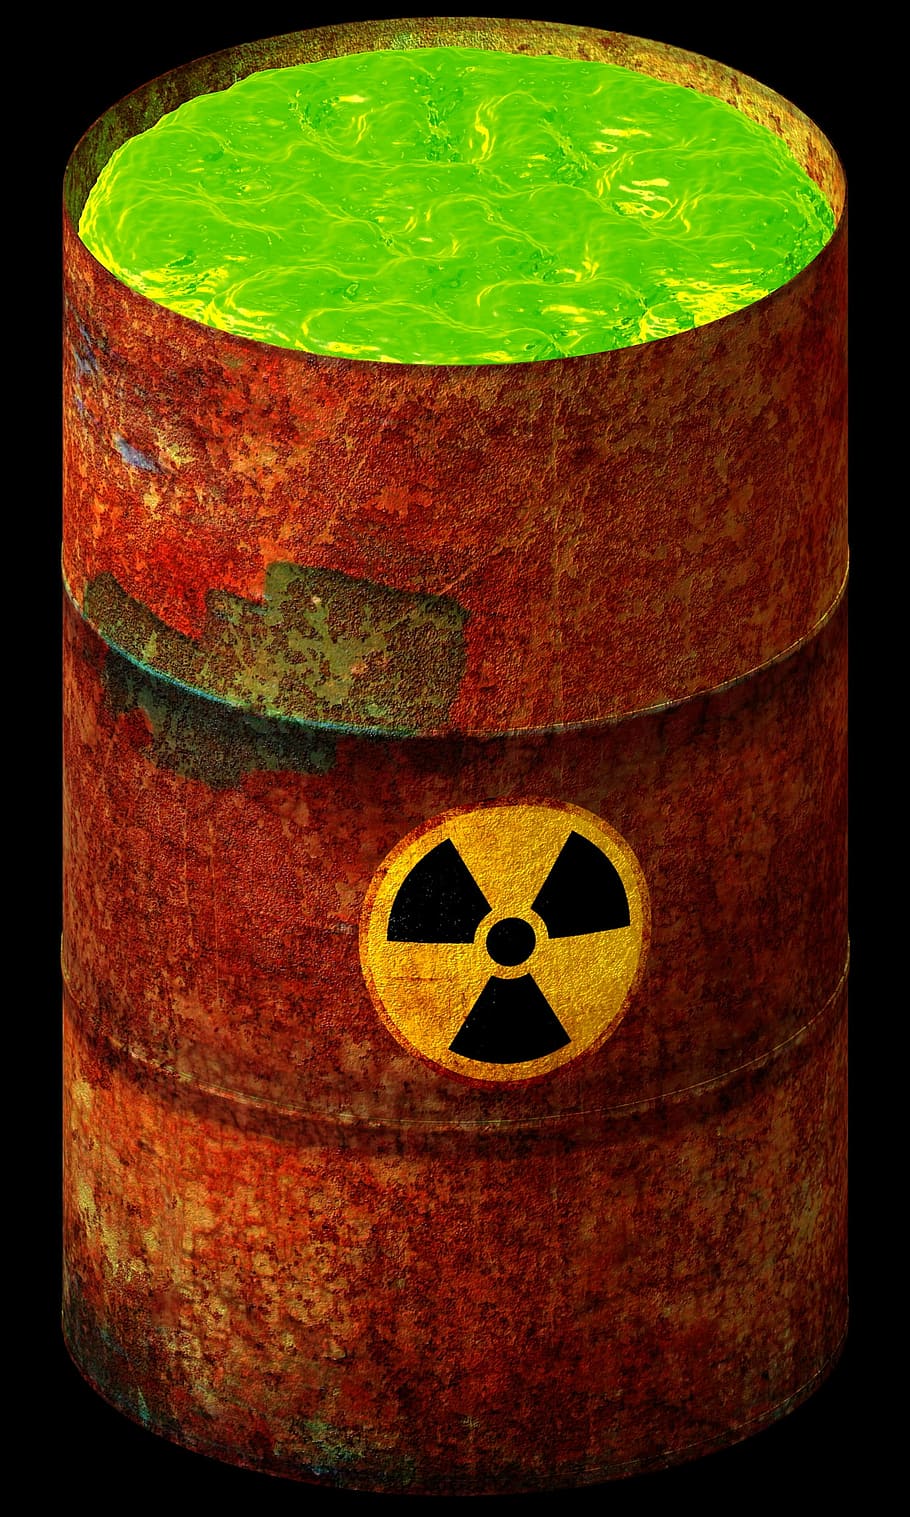 さびた茶色のドラム, 核, 廃棄物, 放射性, 有毒, 危険, 放射線, 環境, 汚染, 生態